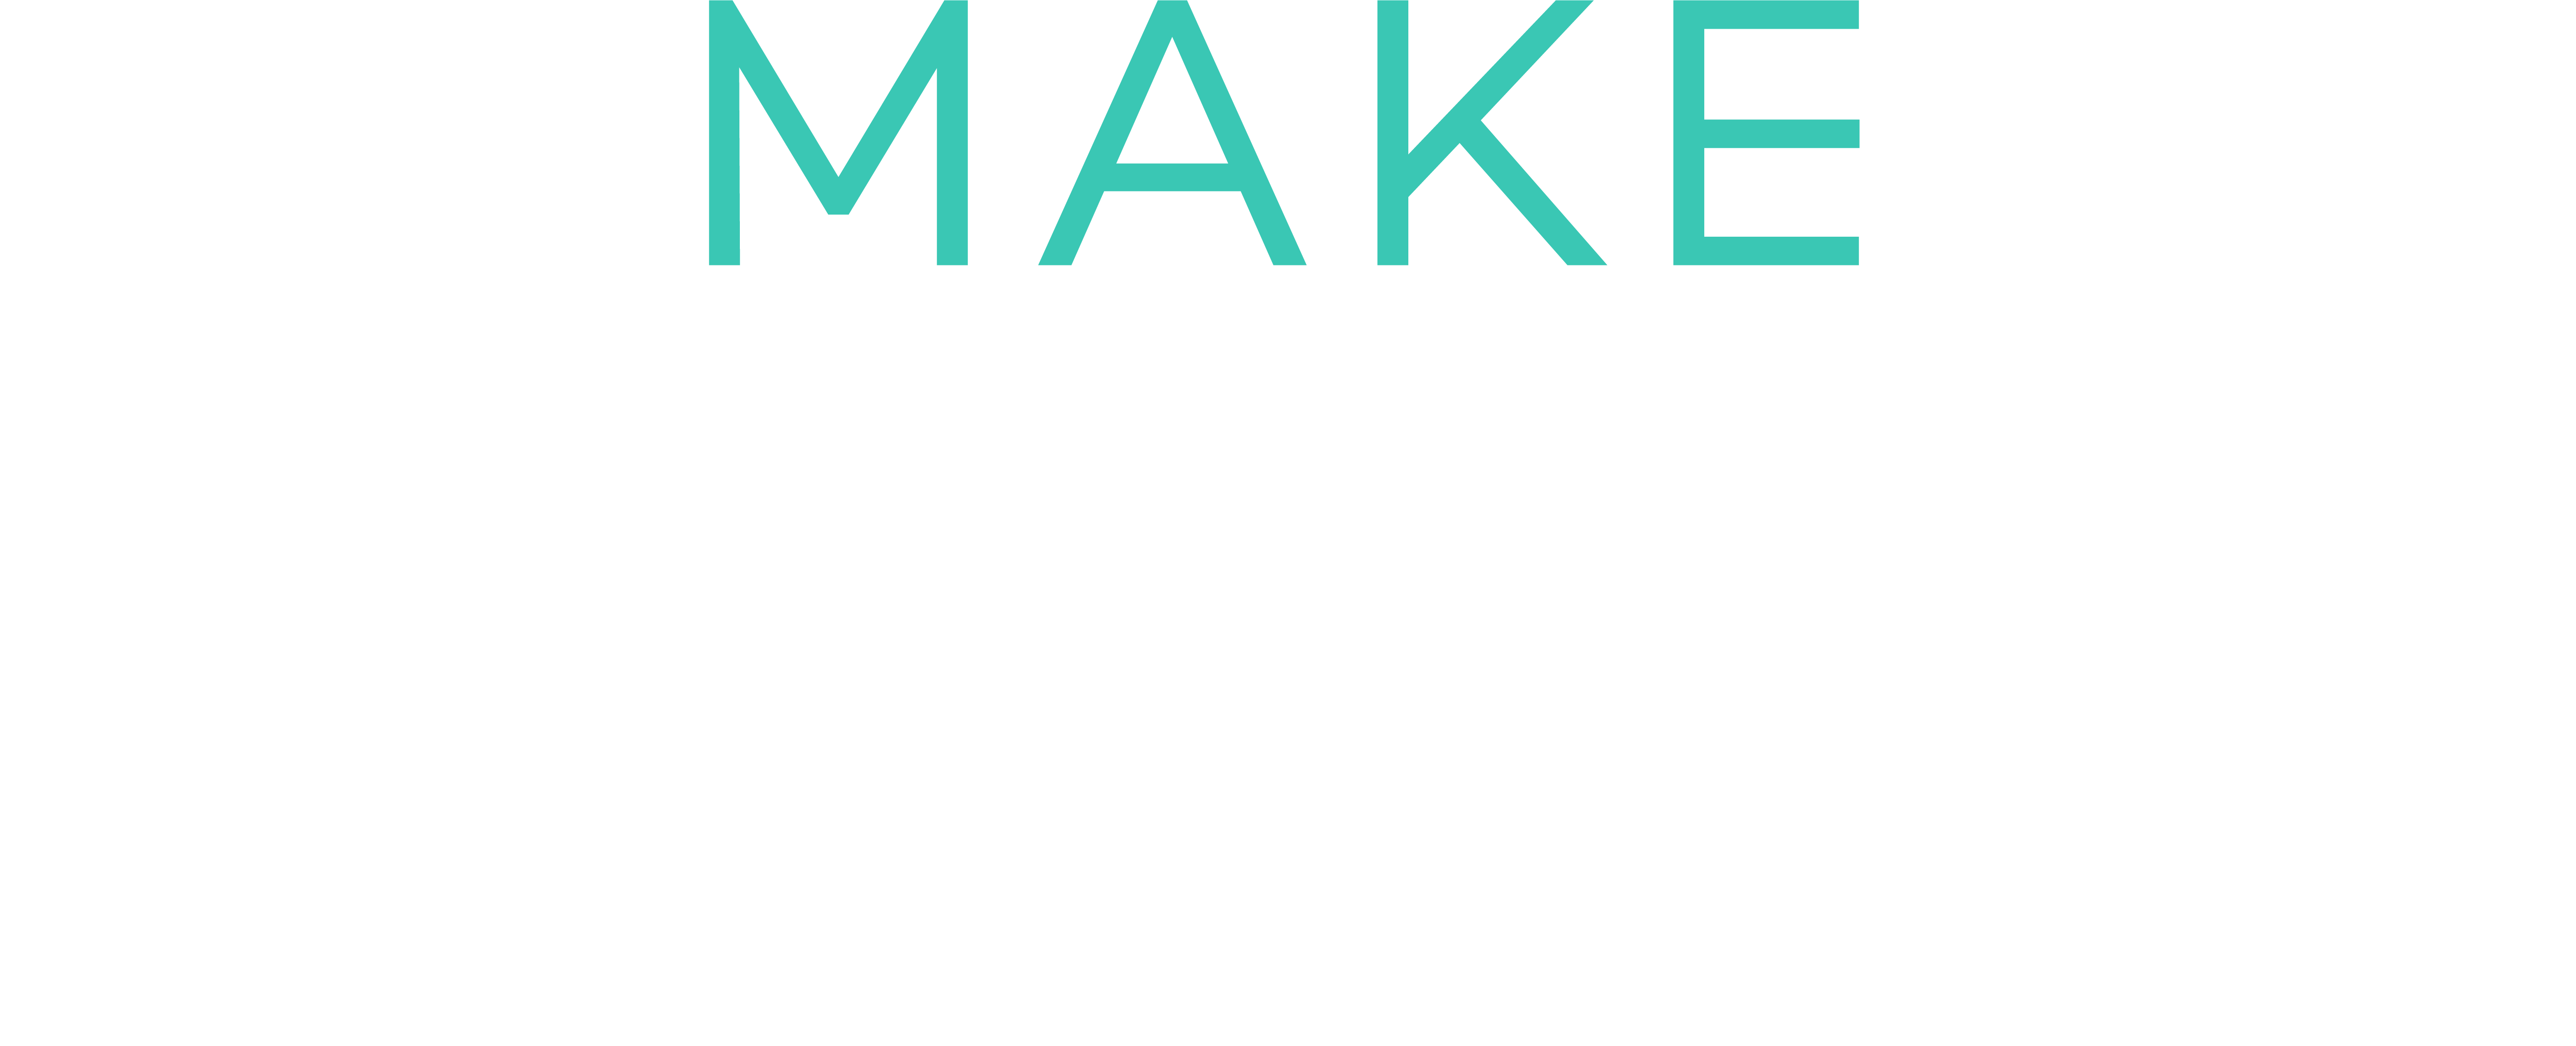 Make Equals logotyp